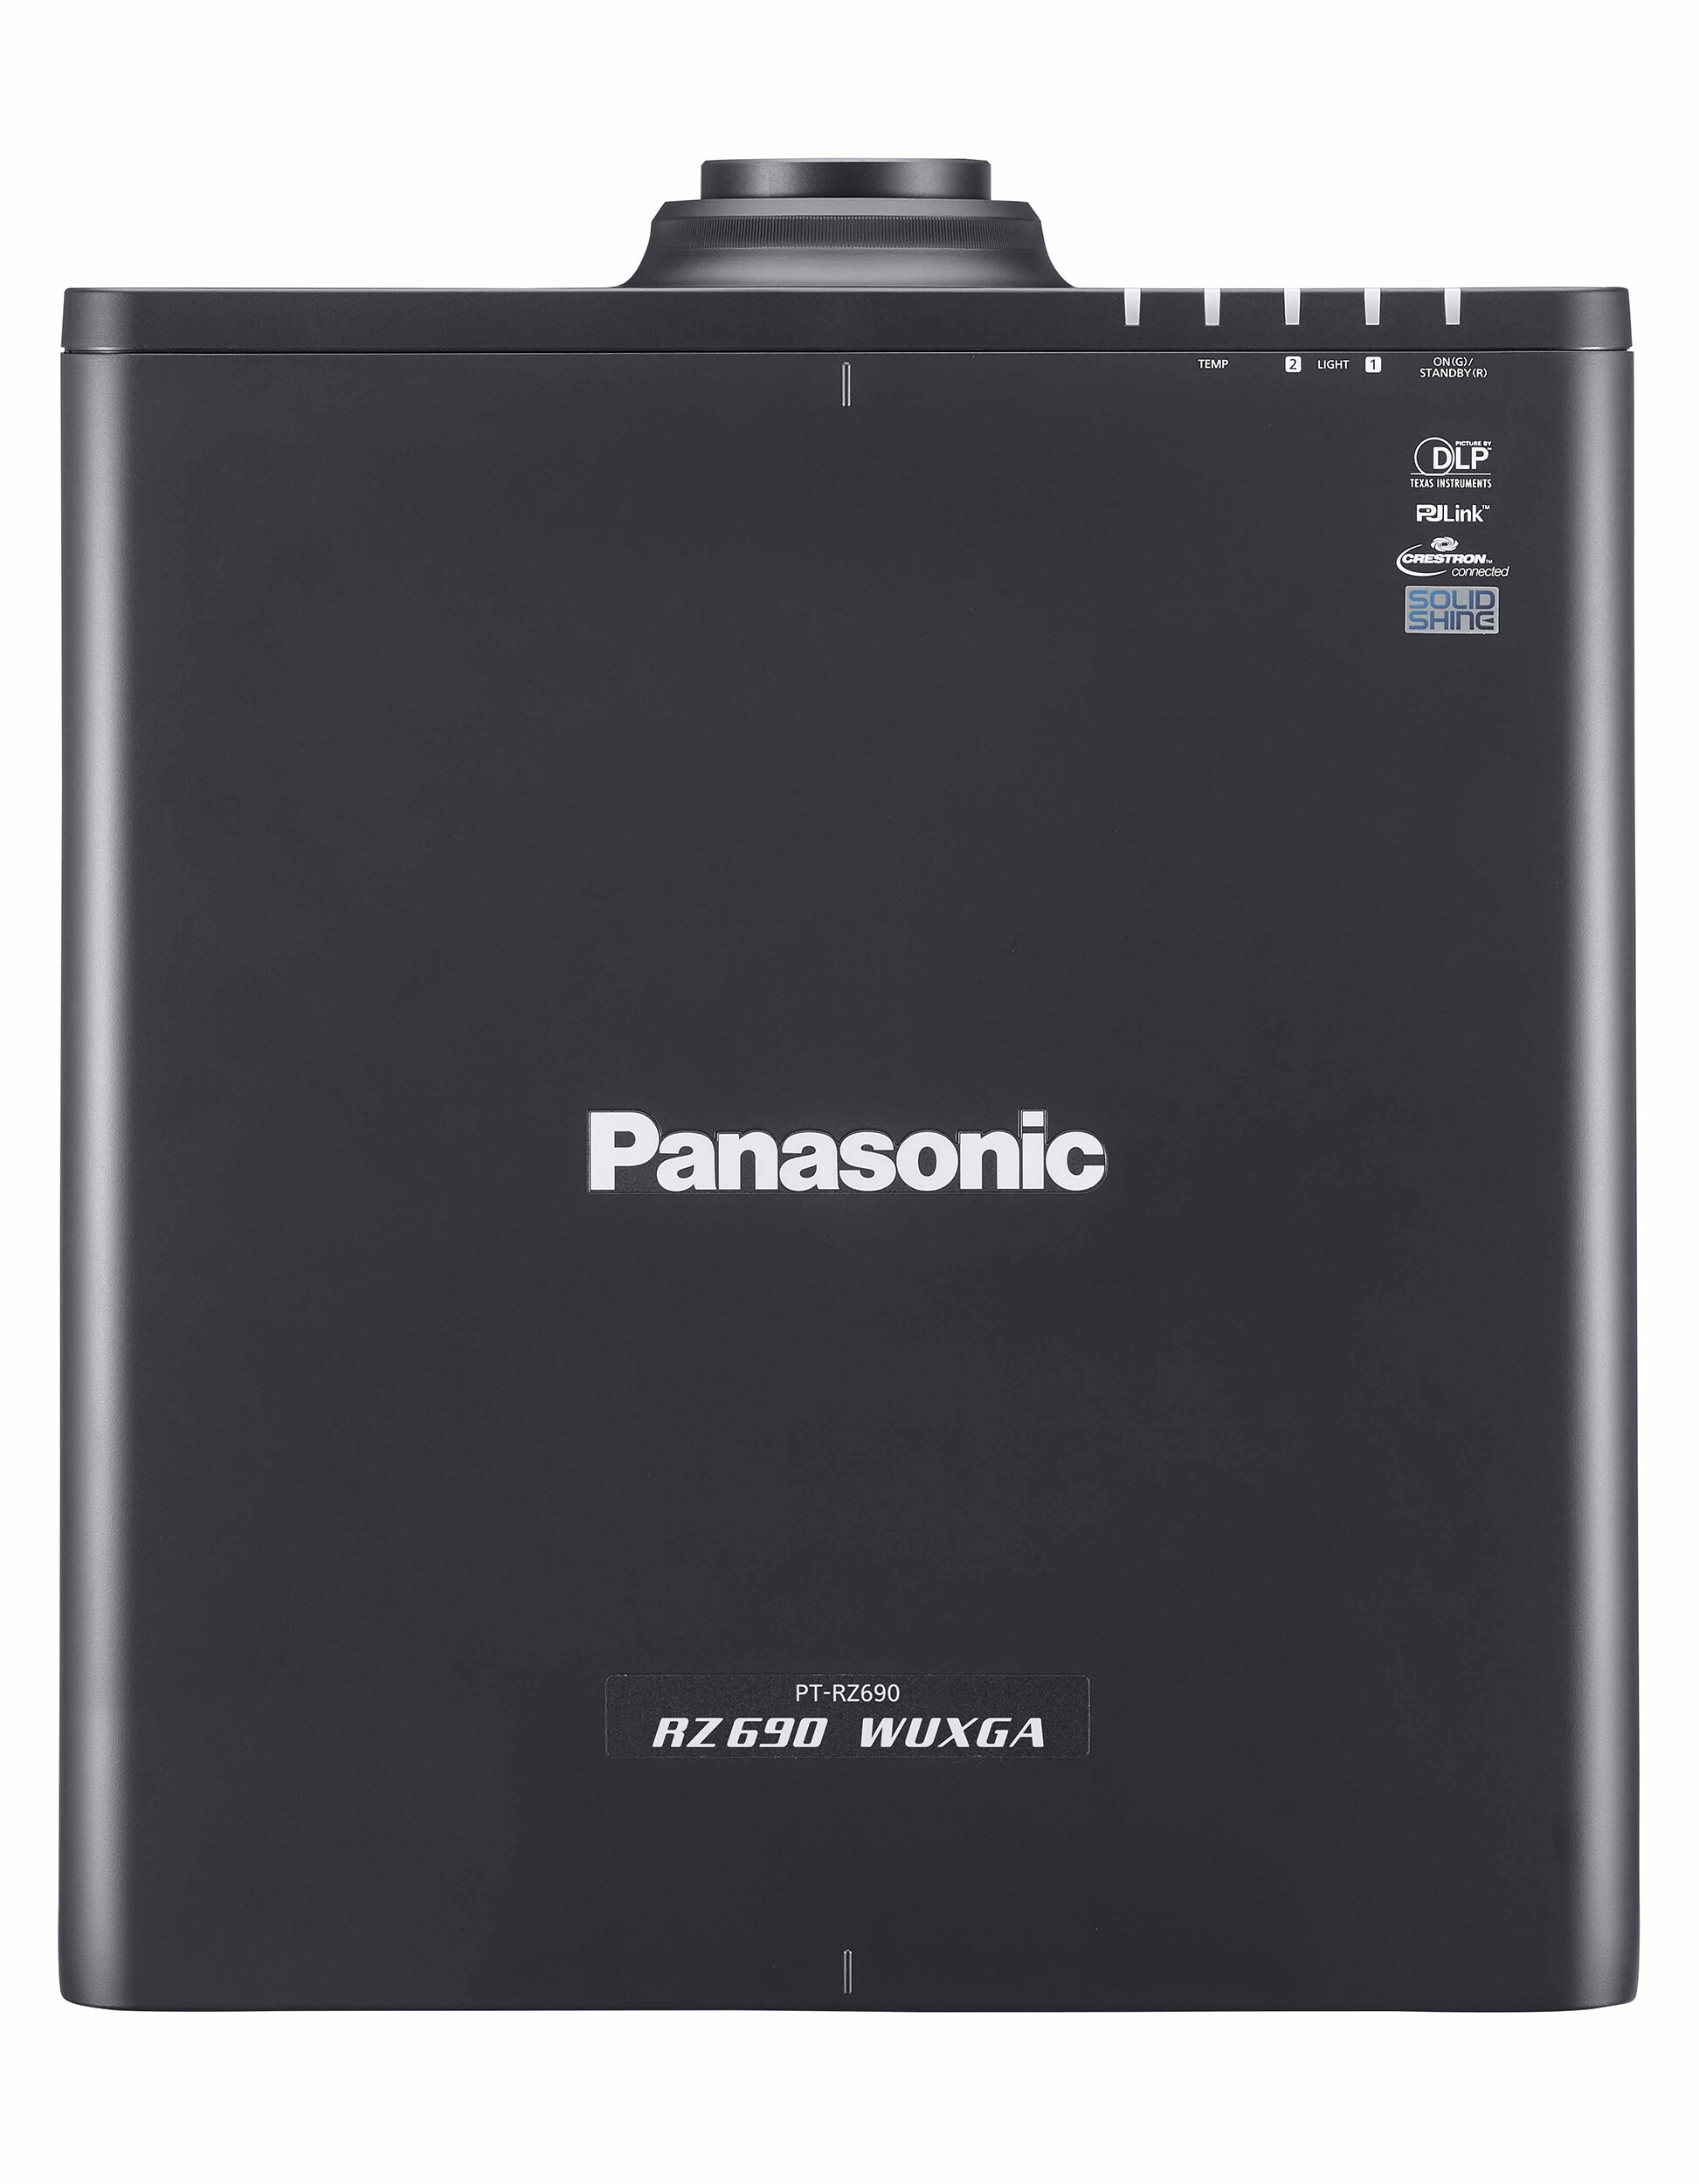 Panasonic-PT-RZ790BE-met-objectief-zwart